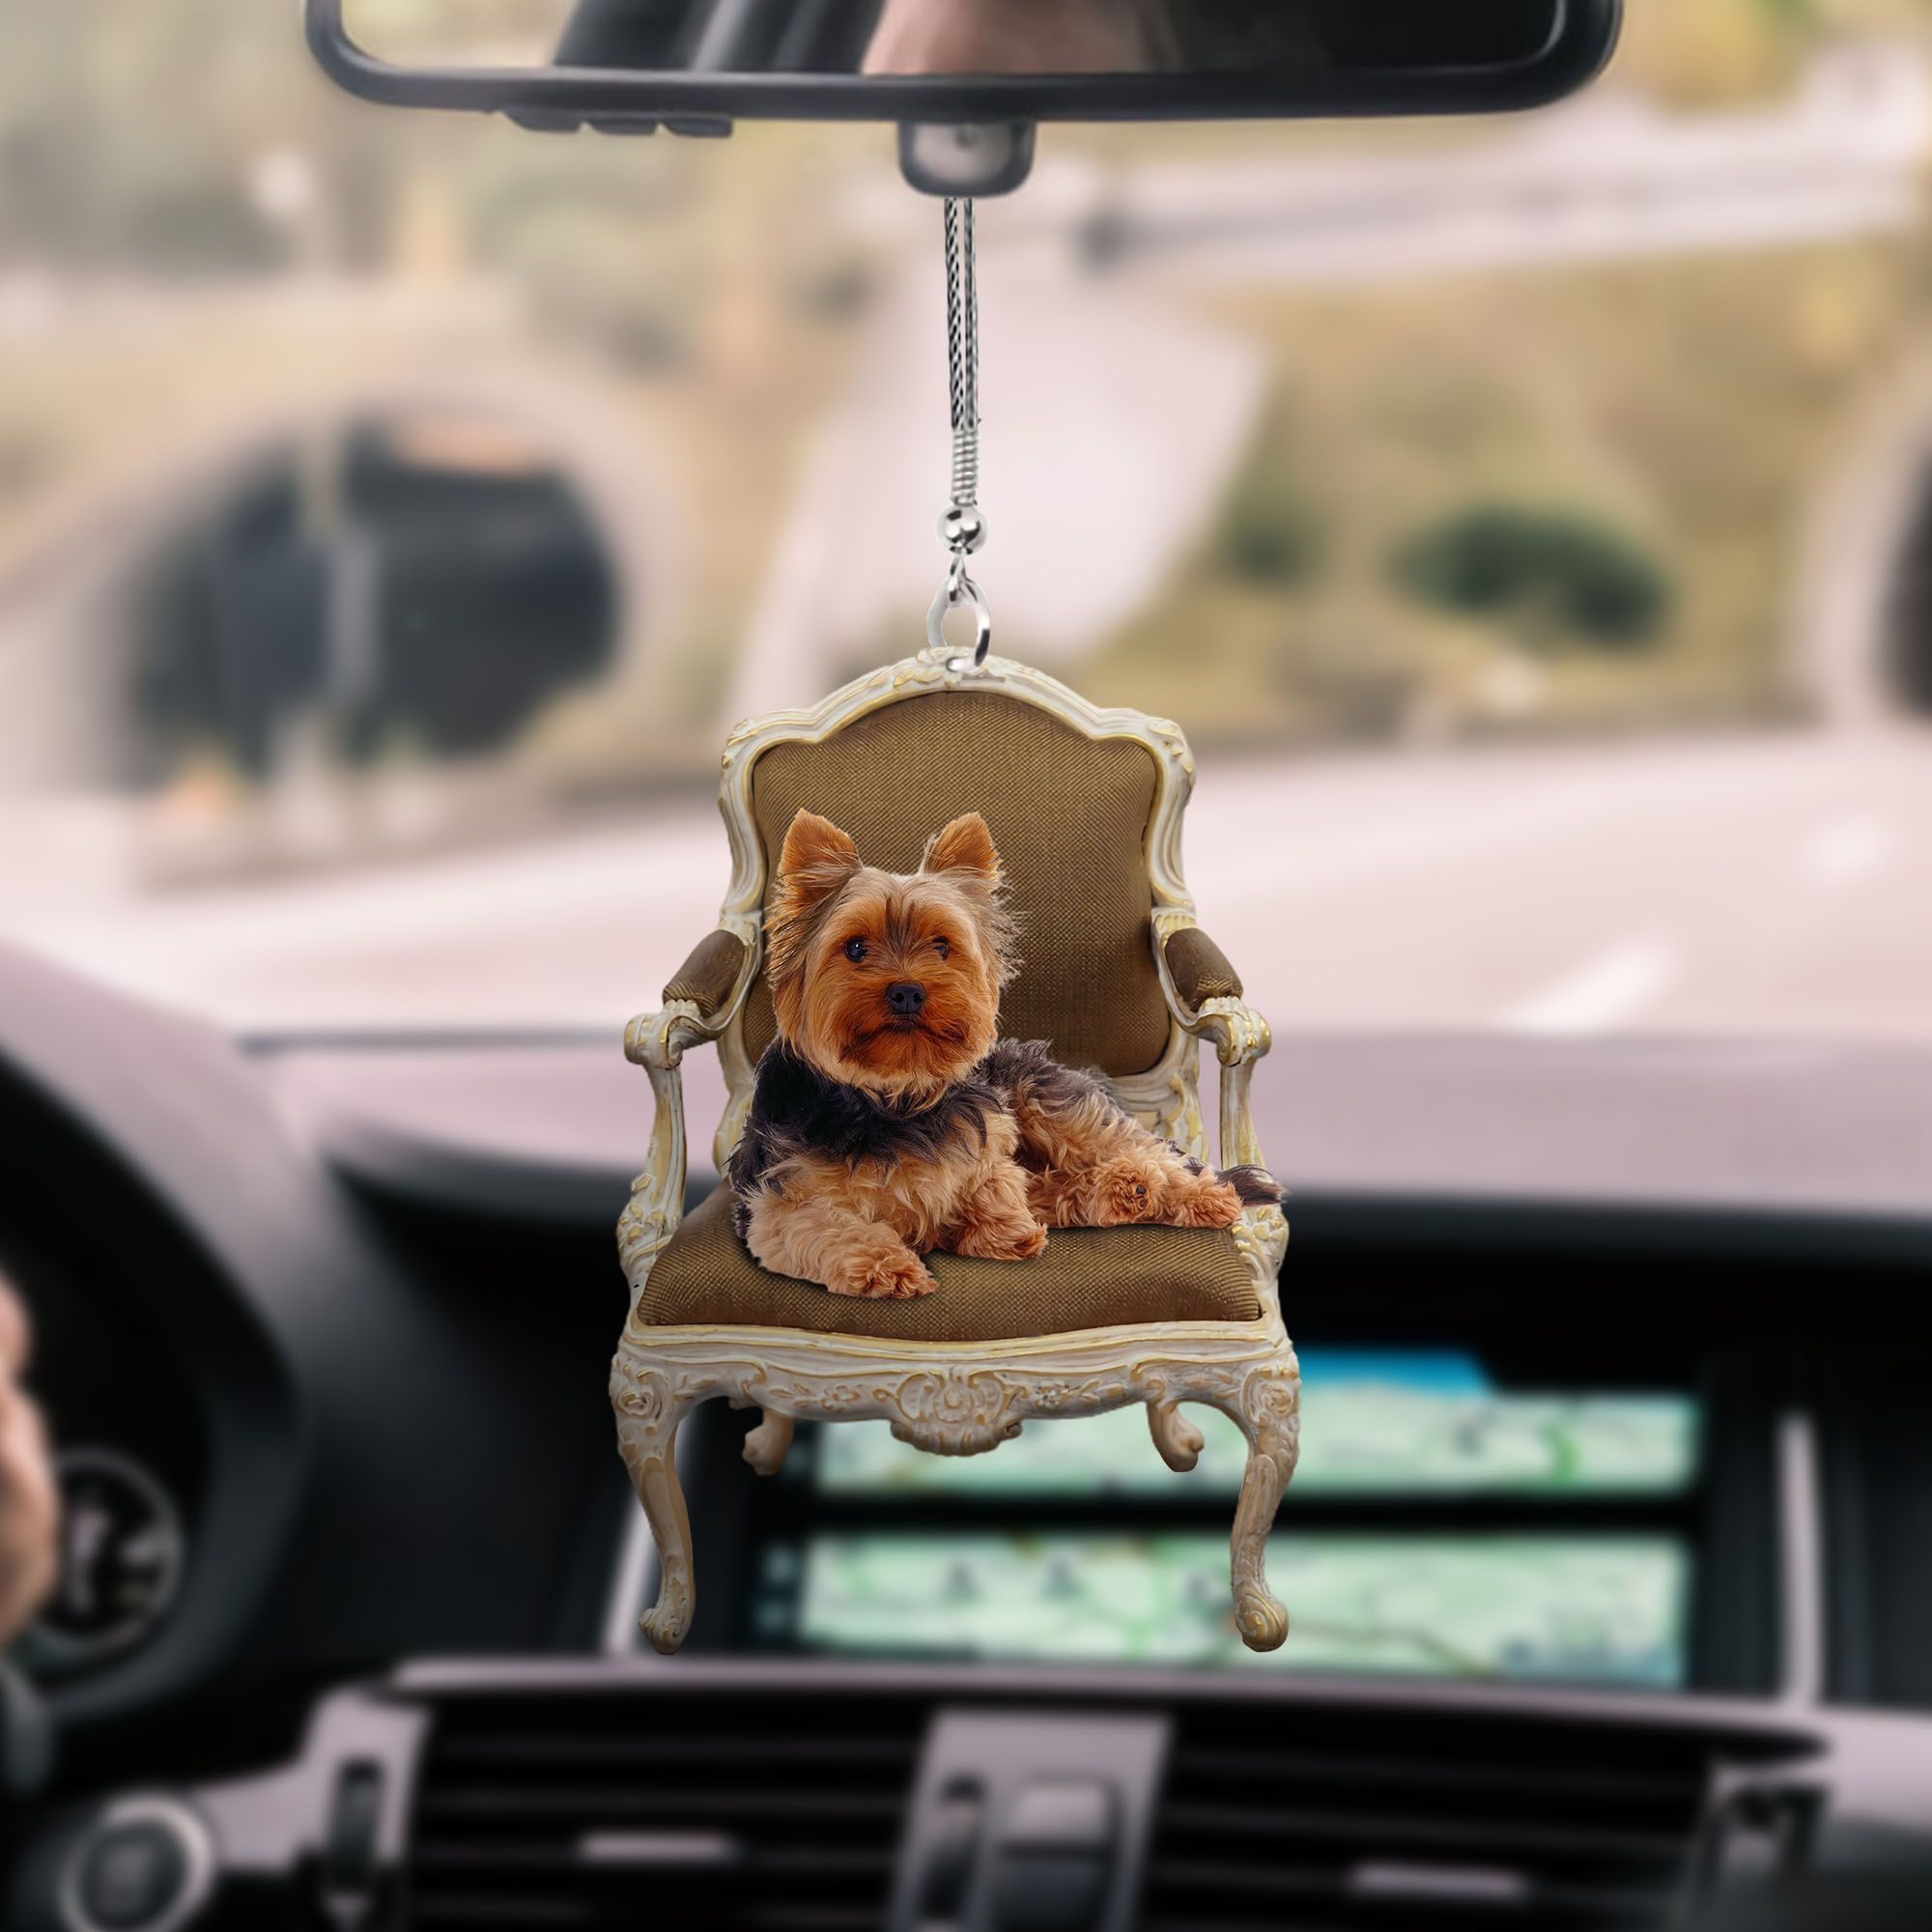 yorkshire-terrier-lying-ks113-ntt070997-nct-car-hanging-ornament